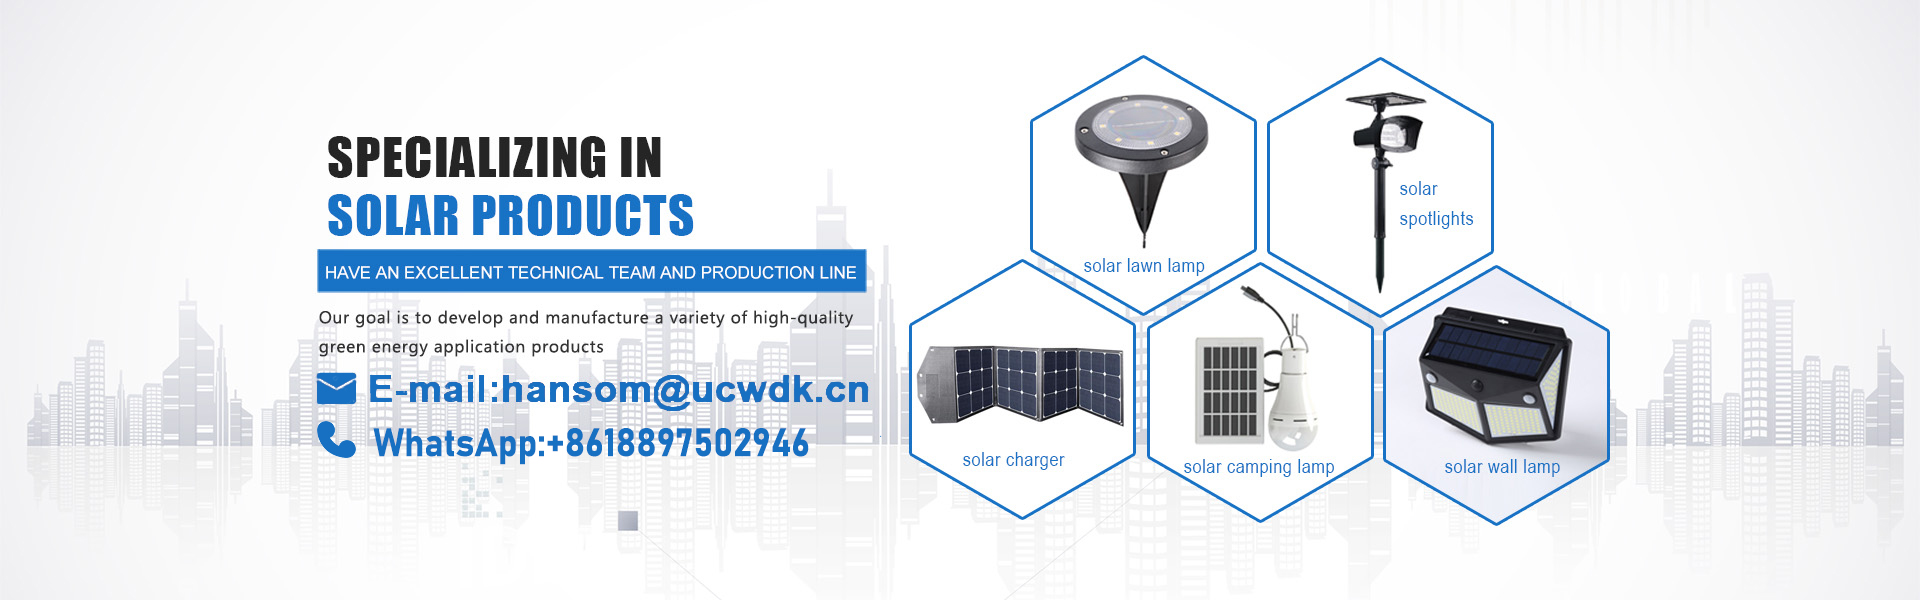 Солнечное зарядное устройство, солнечный свет, солнечная панель,UCWDK Solar Technology Co. Ltd.